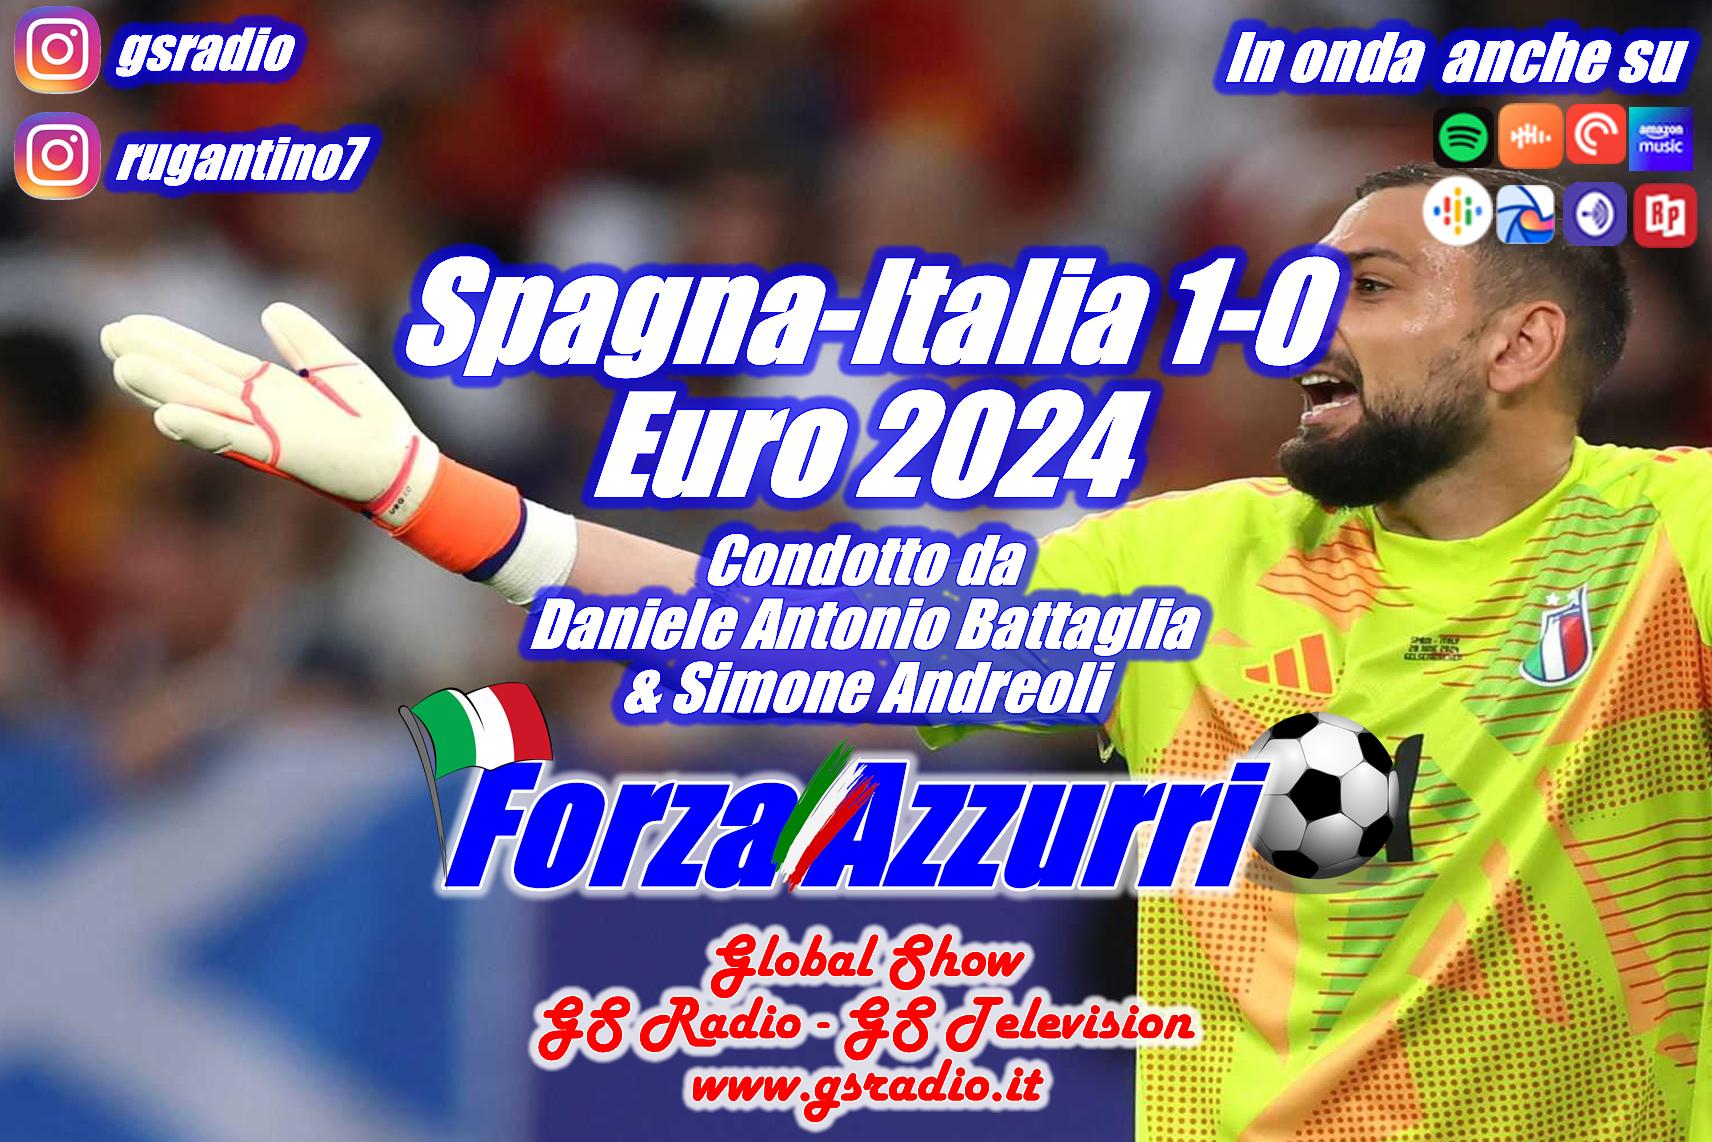 5 - Spagna-Italia Euro 2024